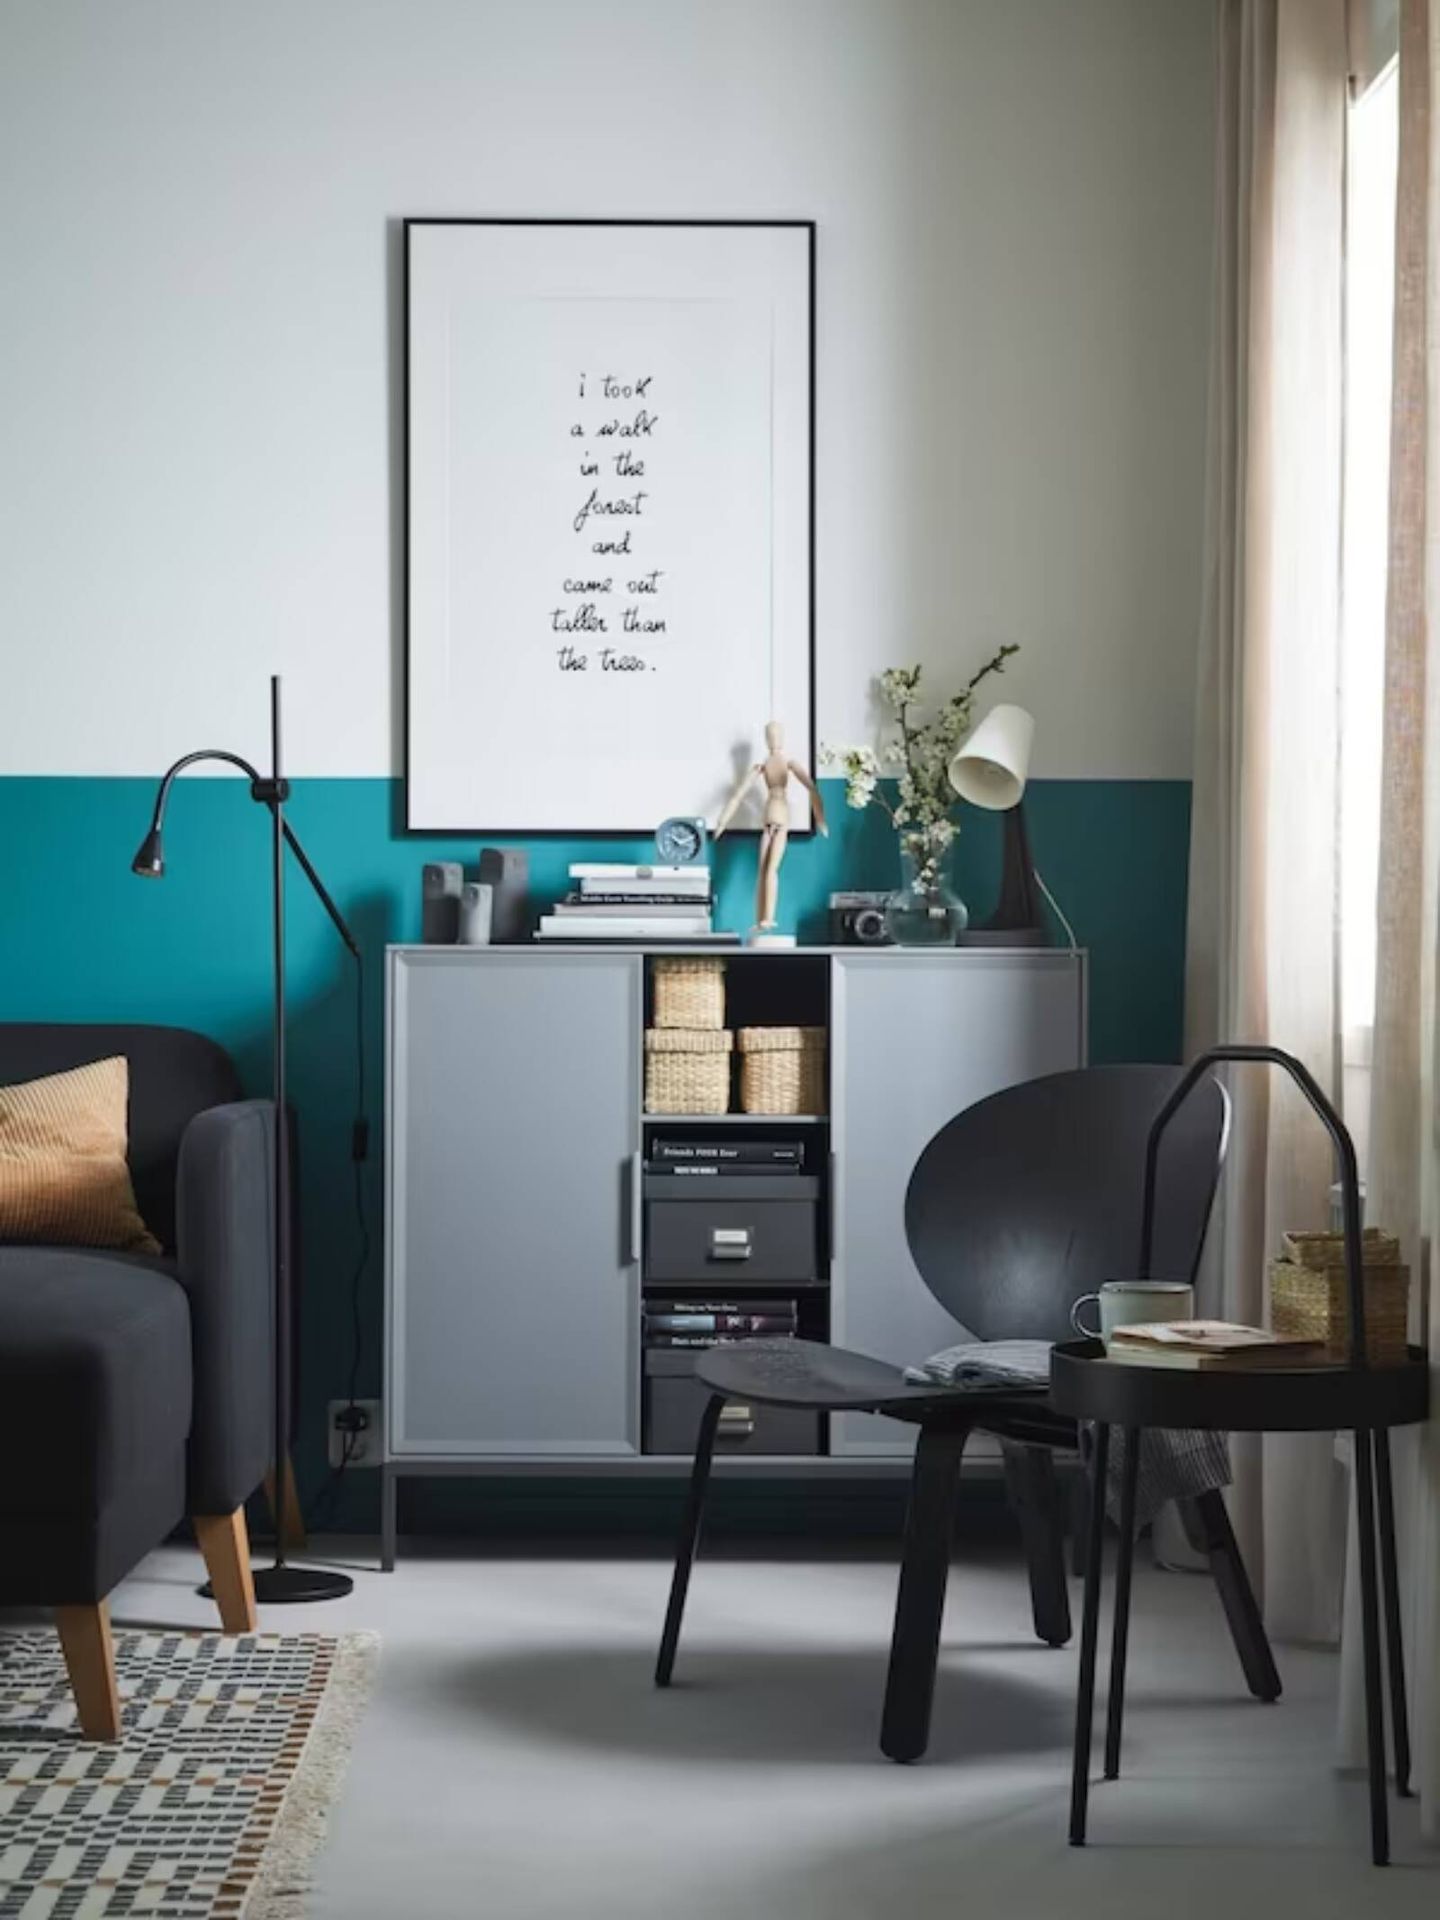 El nuevo mueble de Ikea es ideal para cualquier estancia. (Cortesía/Ikea)